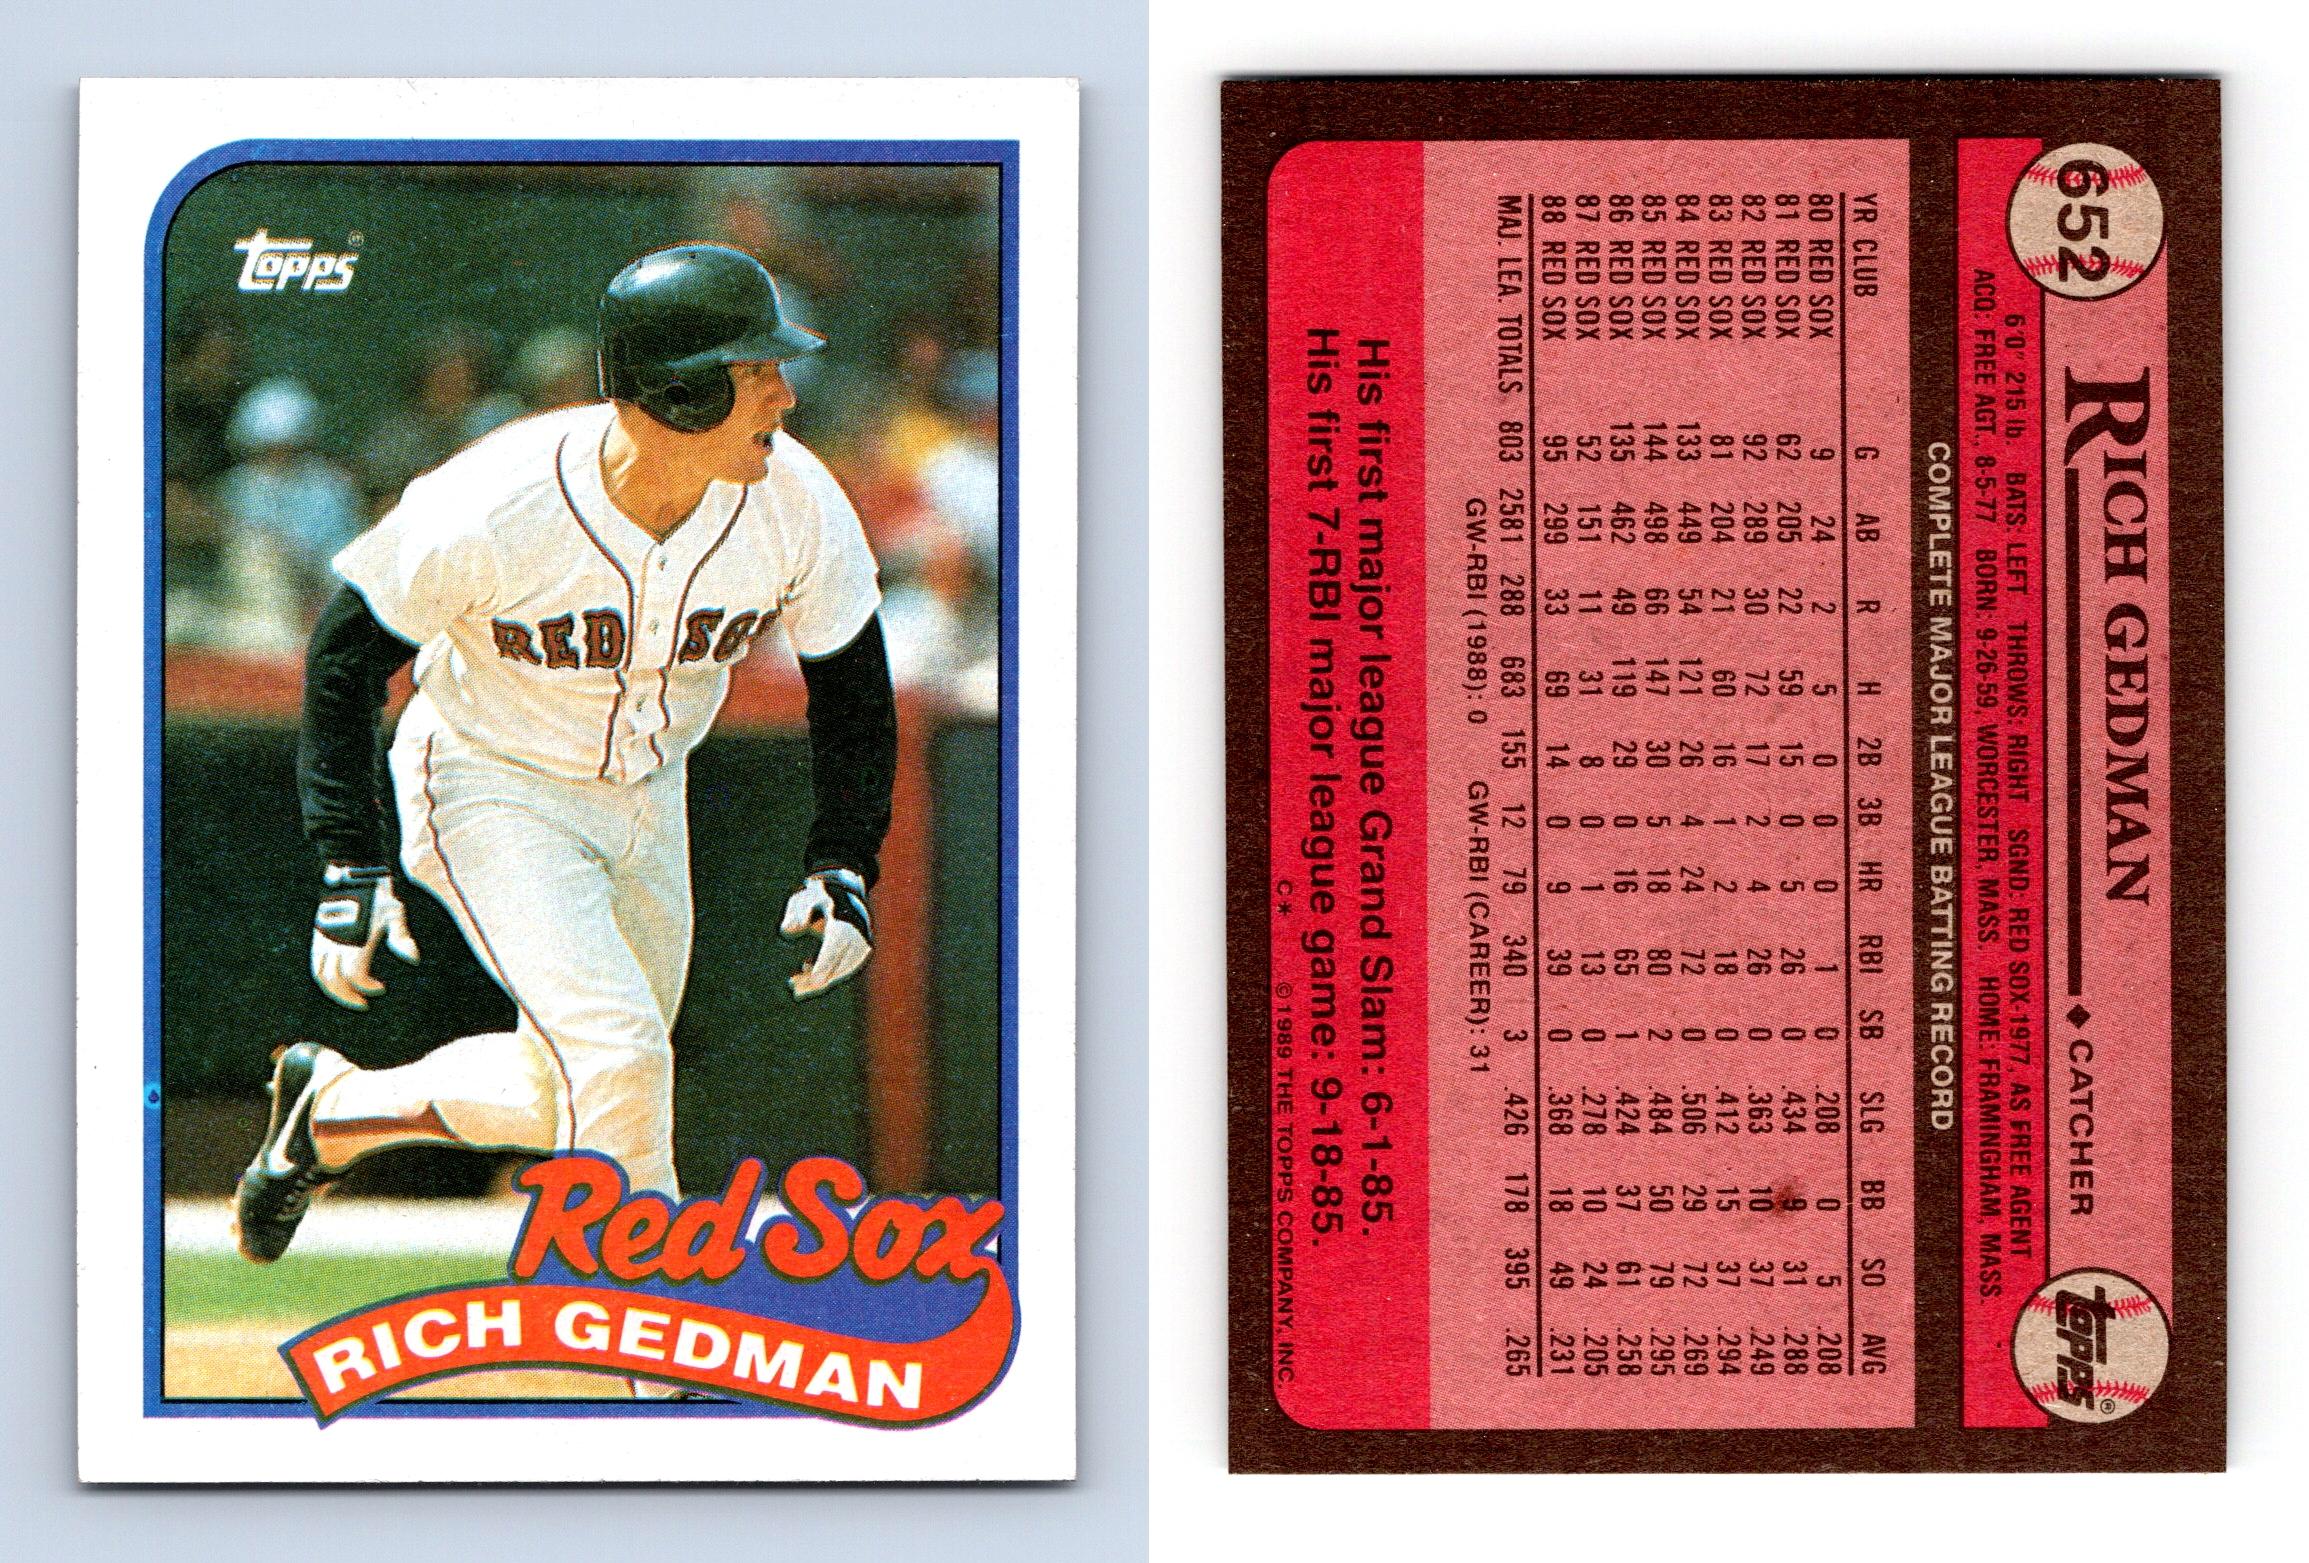 1989 Topps All Star Orel Hershiser card #394 Los Angeles Dodgers Baseball